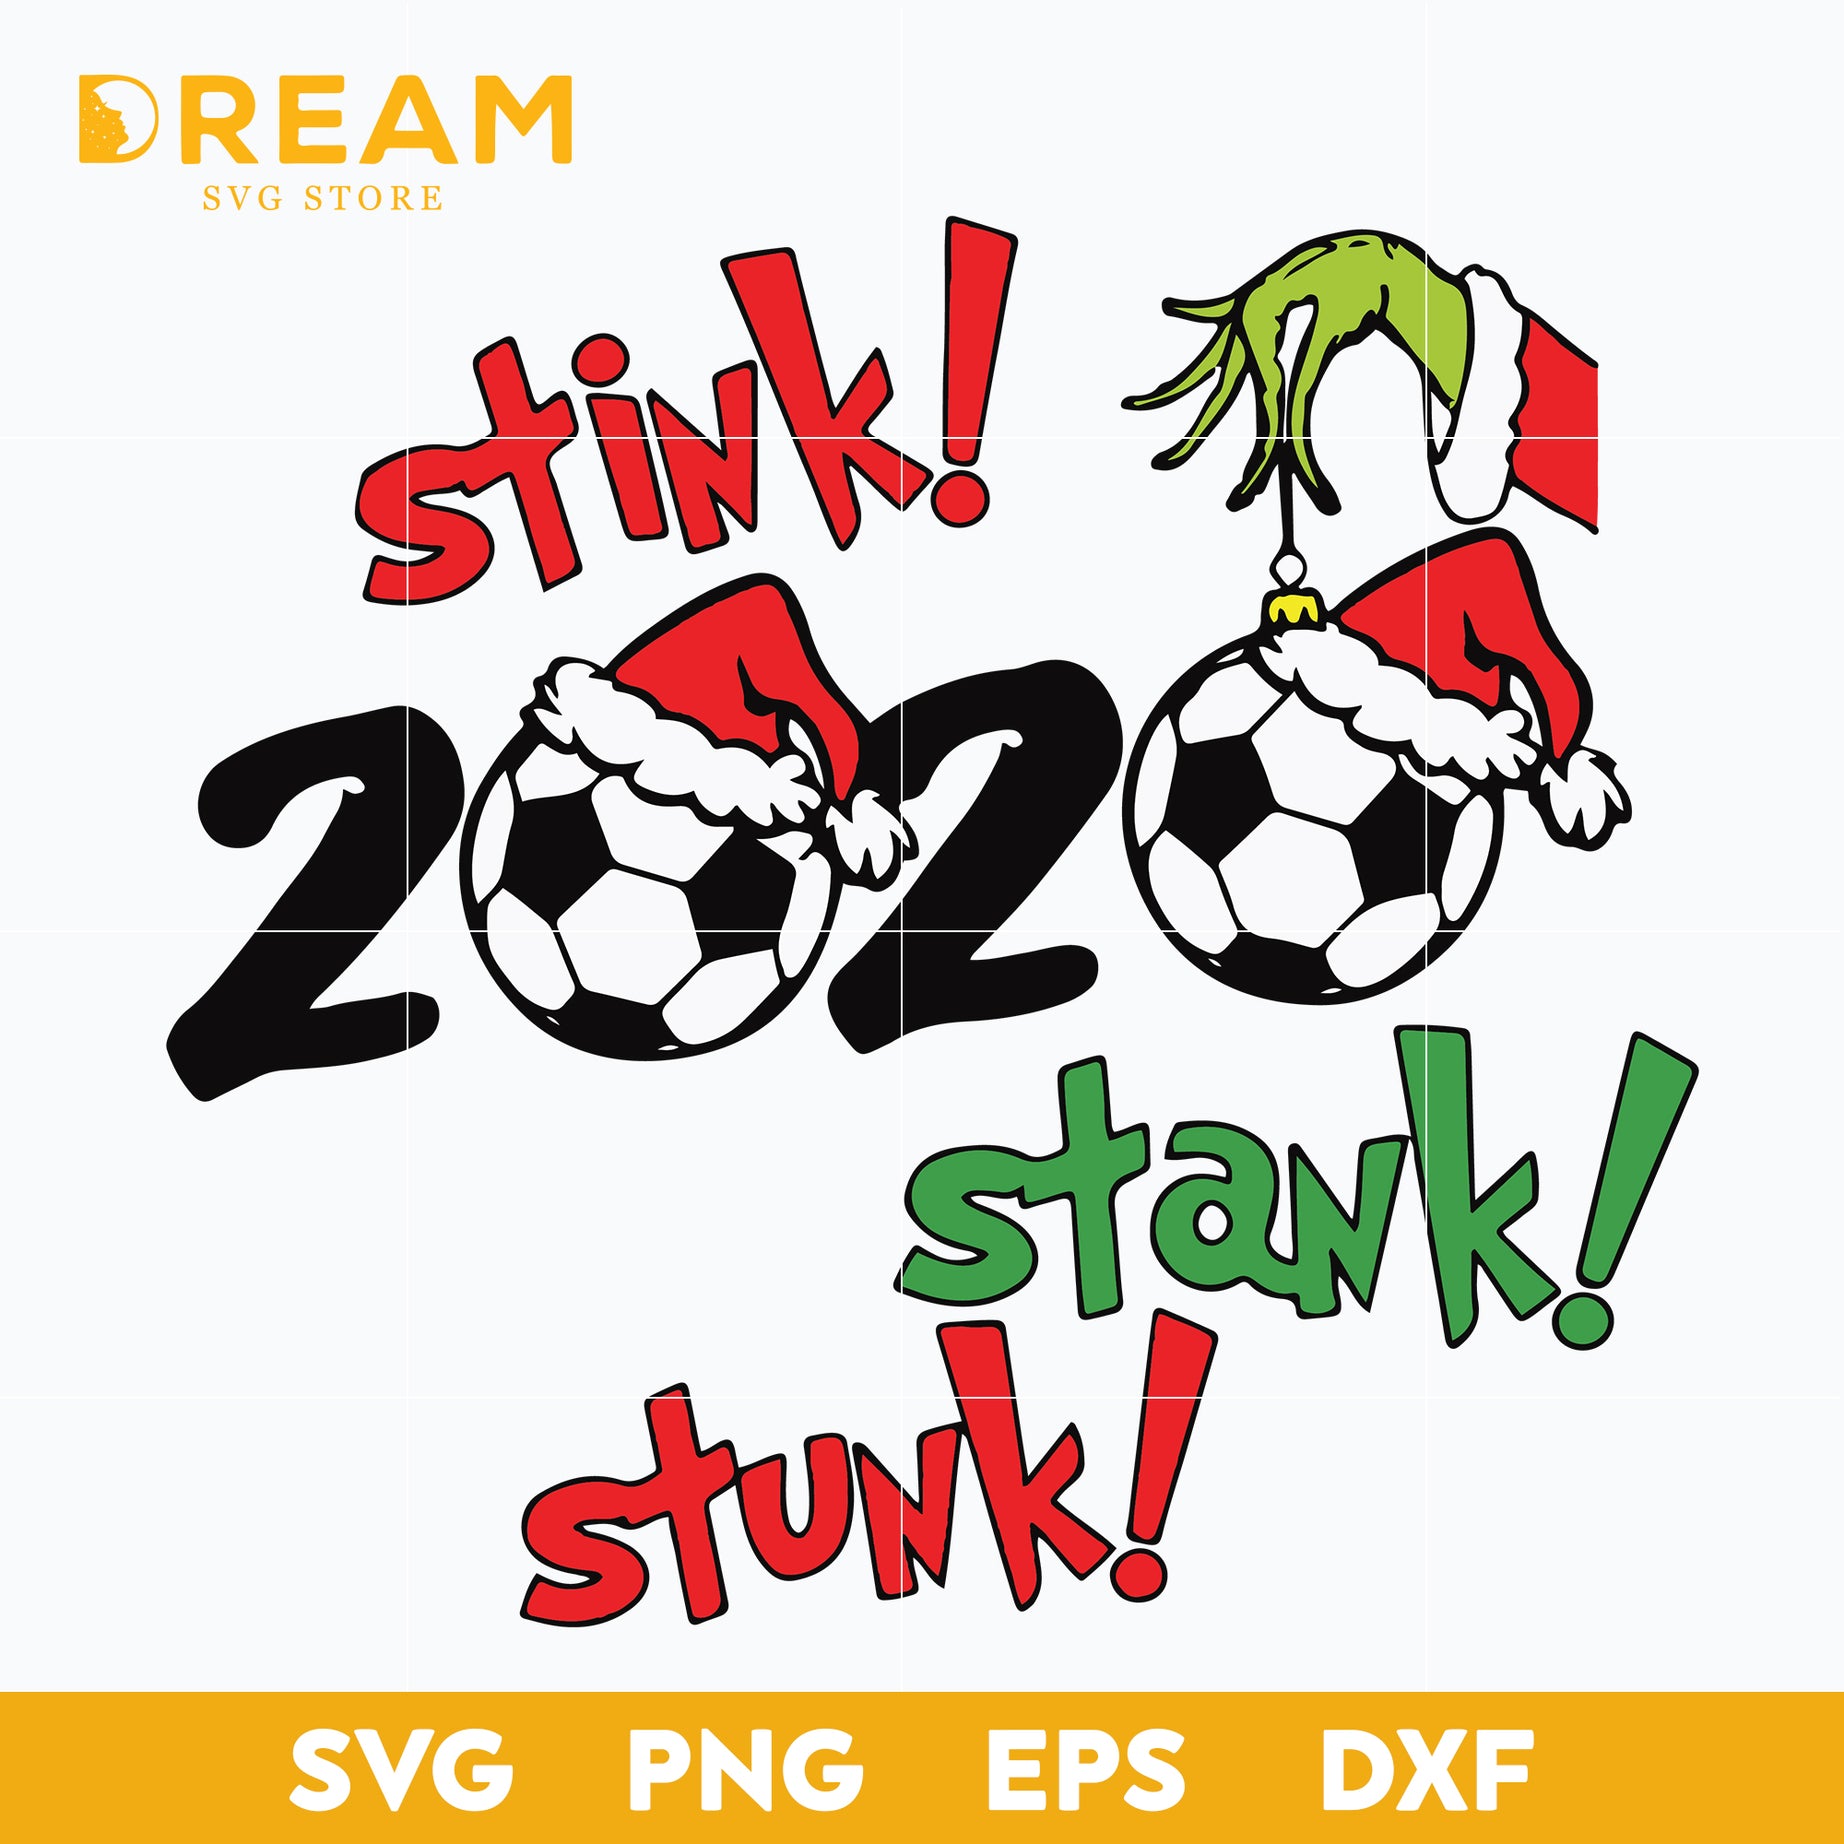 Stink 2020 stank stunk grinch svg, grinch svg, Christmas svg, png, dxf, eps digital file CRM0312203L